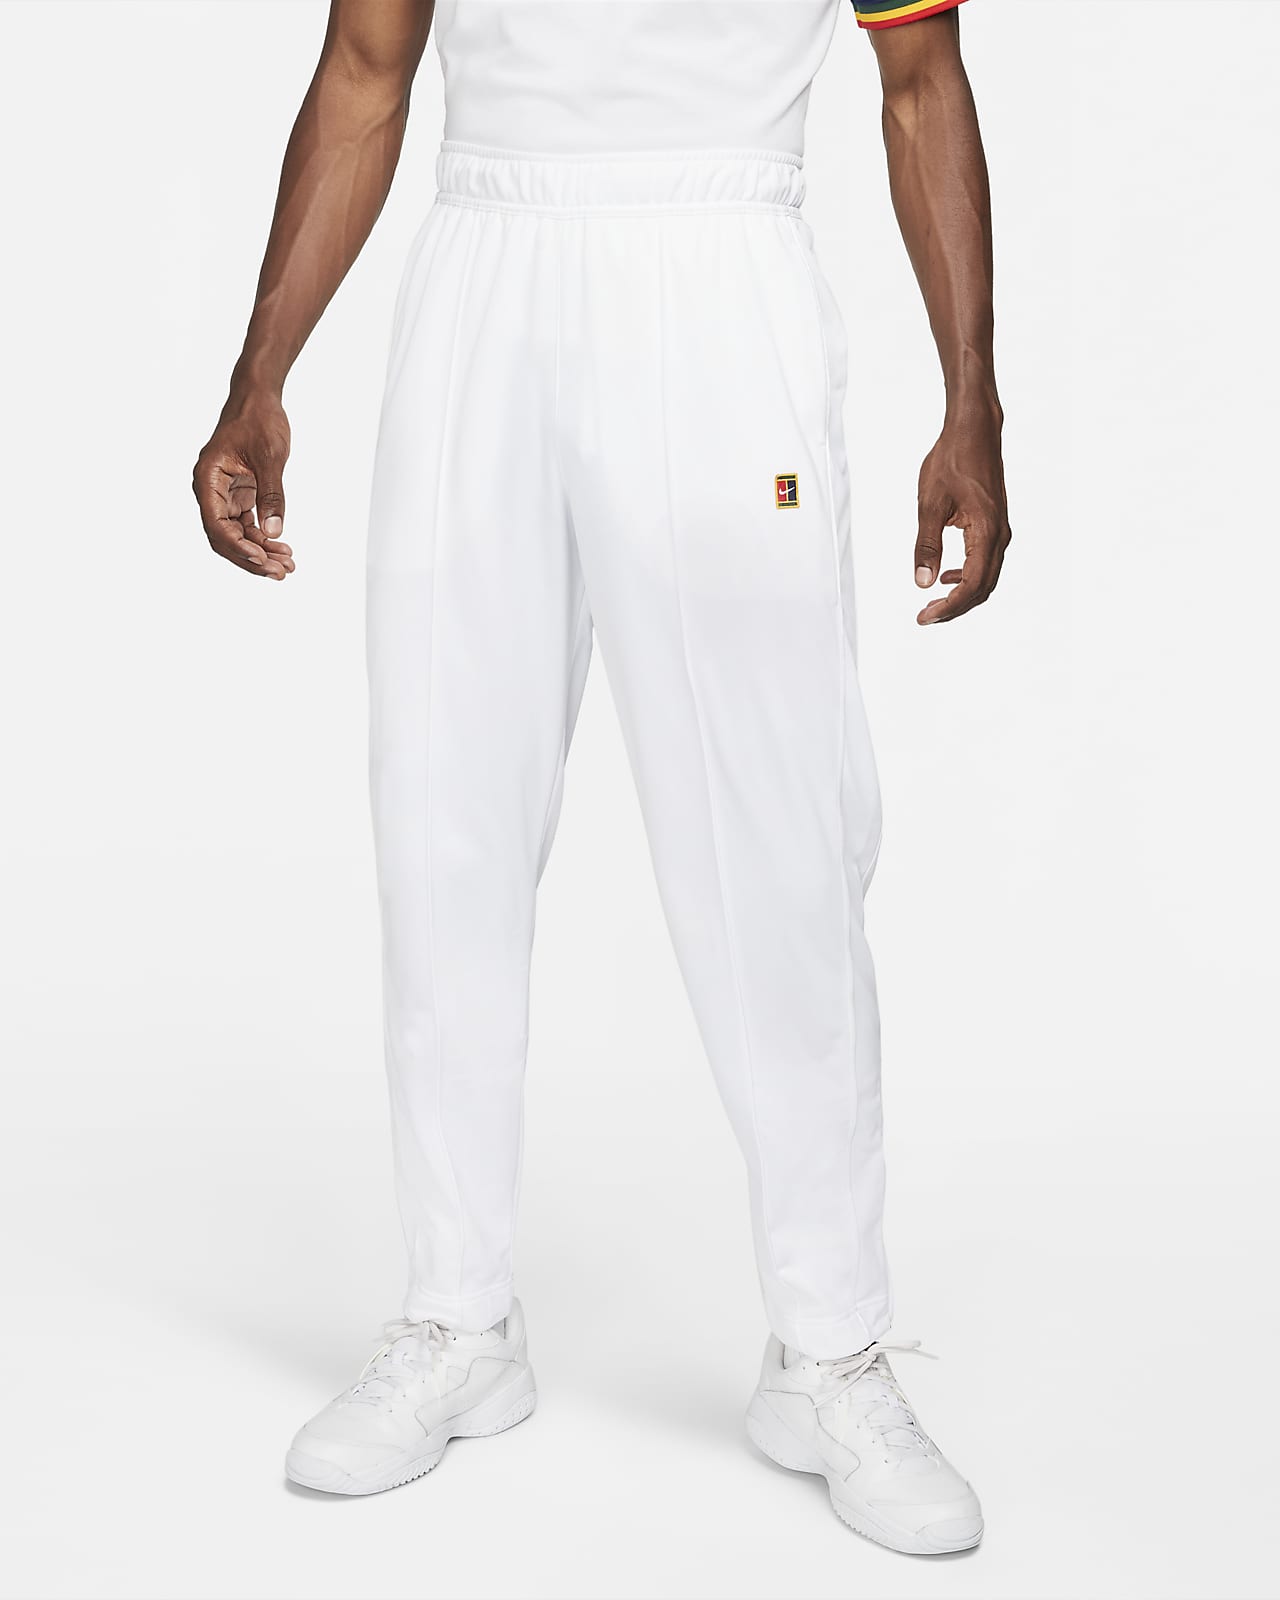 Pantalones para hombre Nike.com